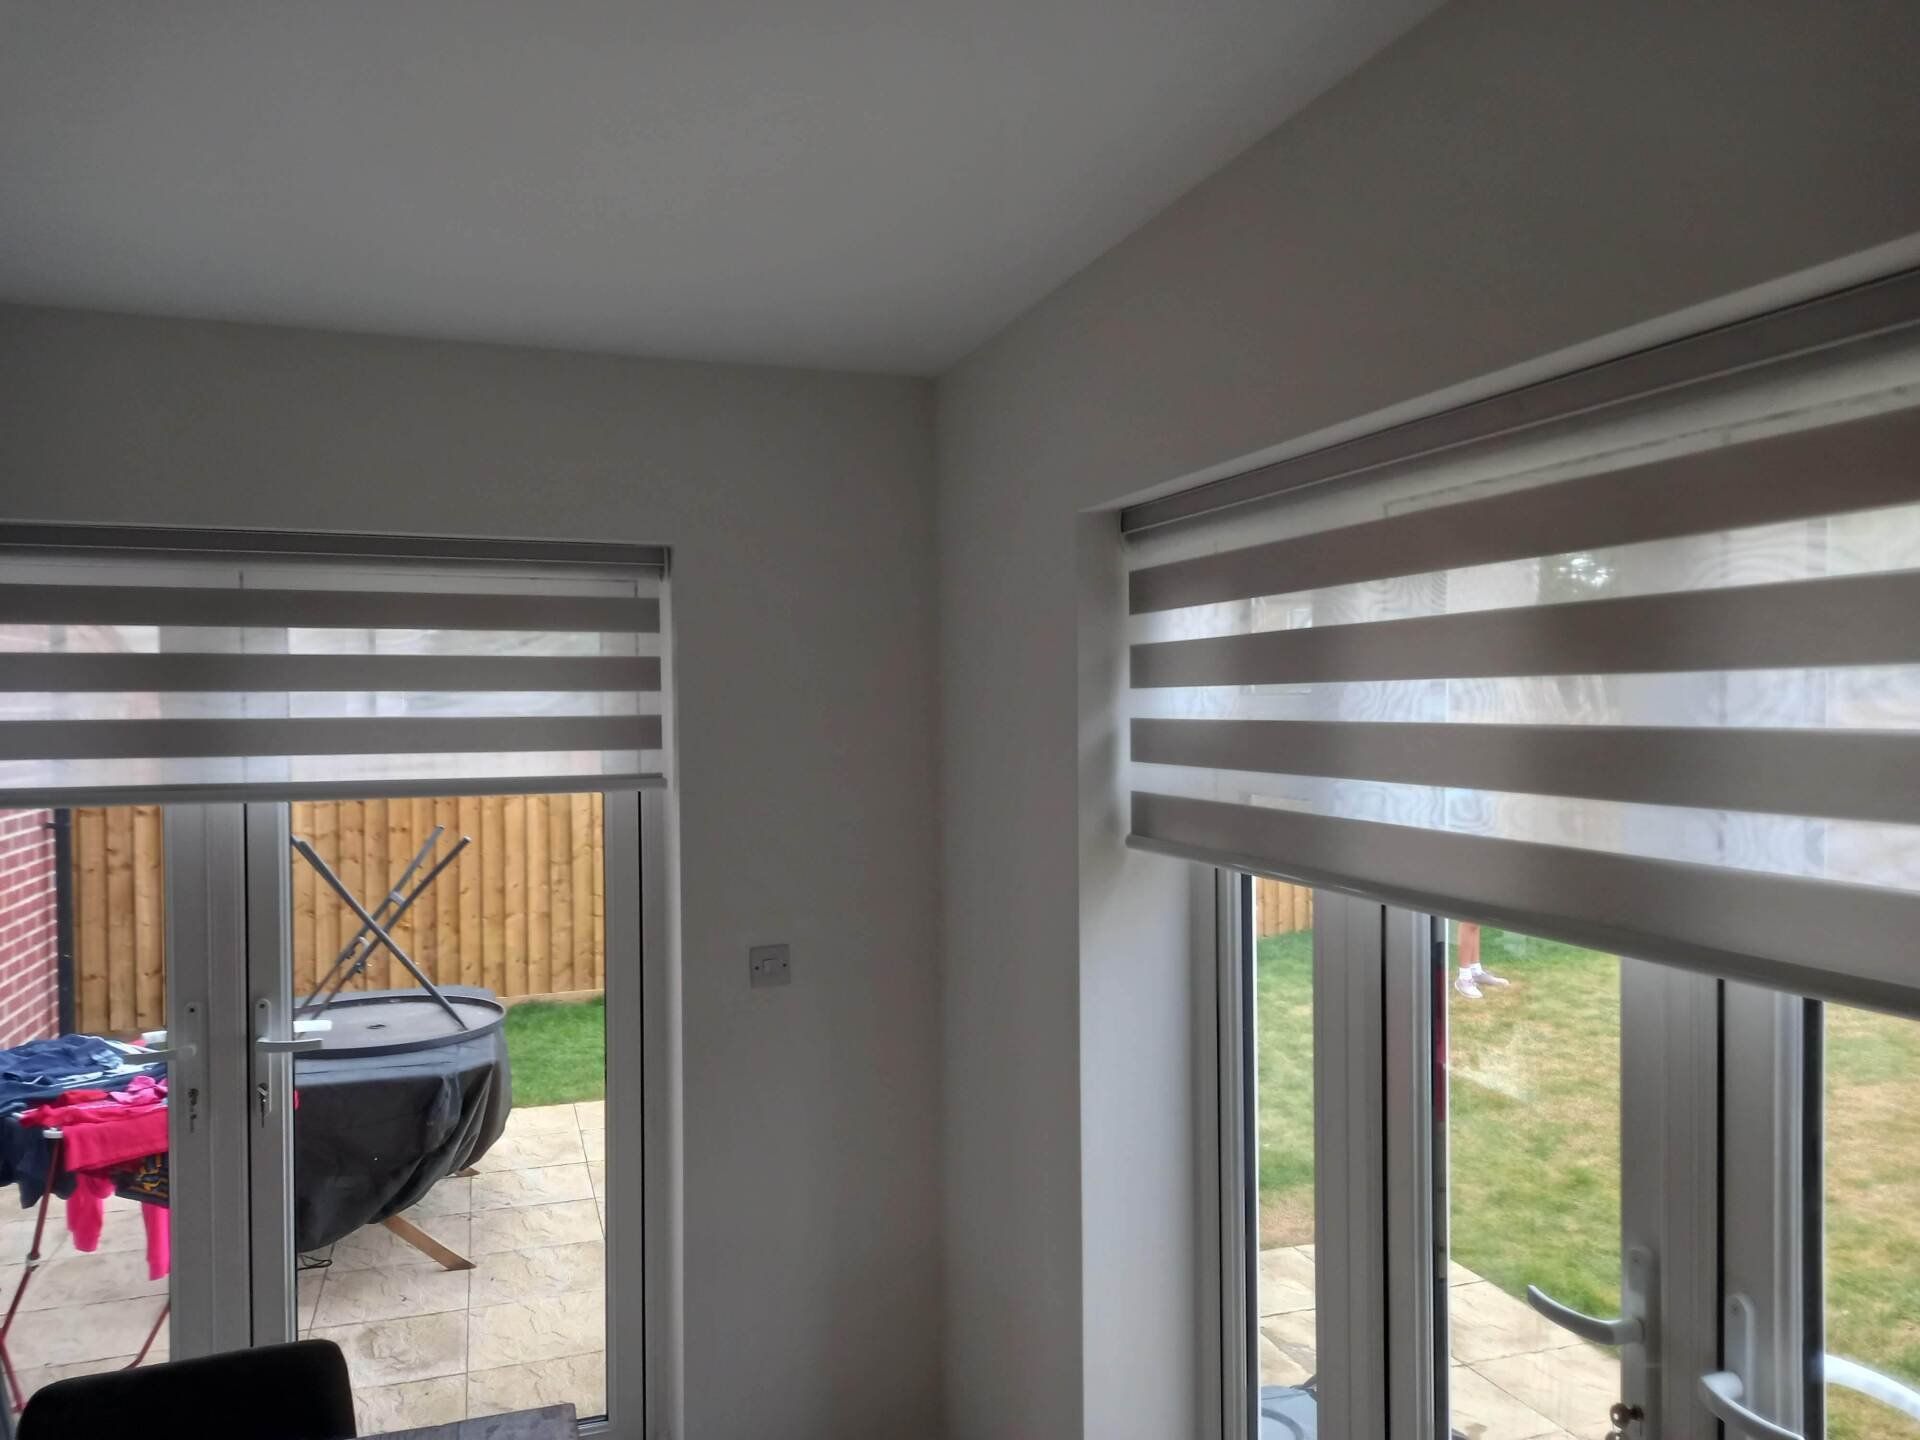 Dual shade door blinds